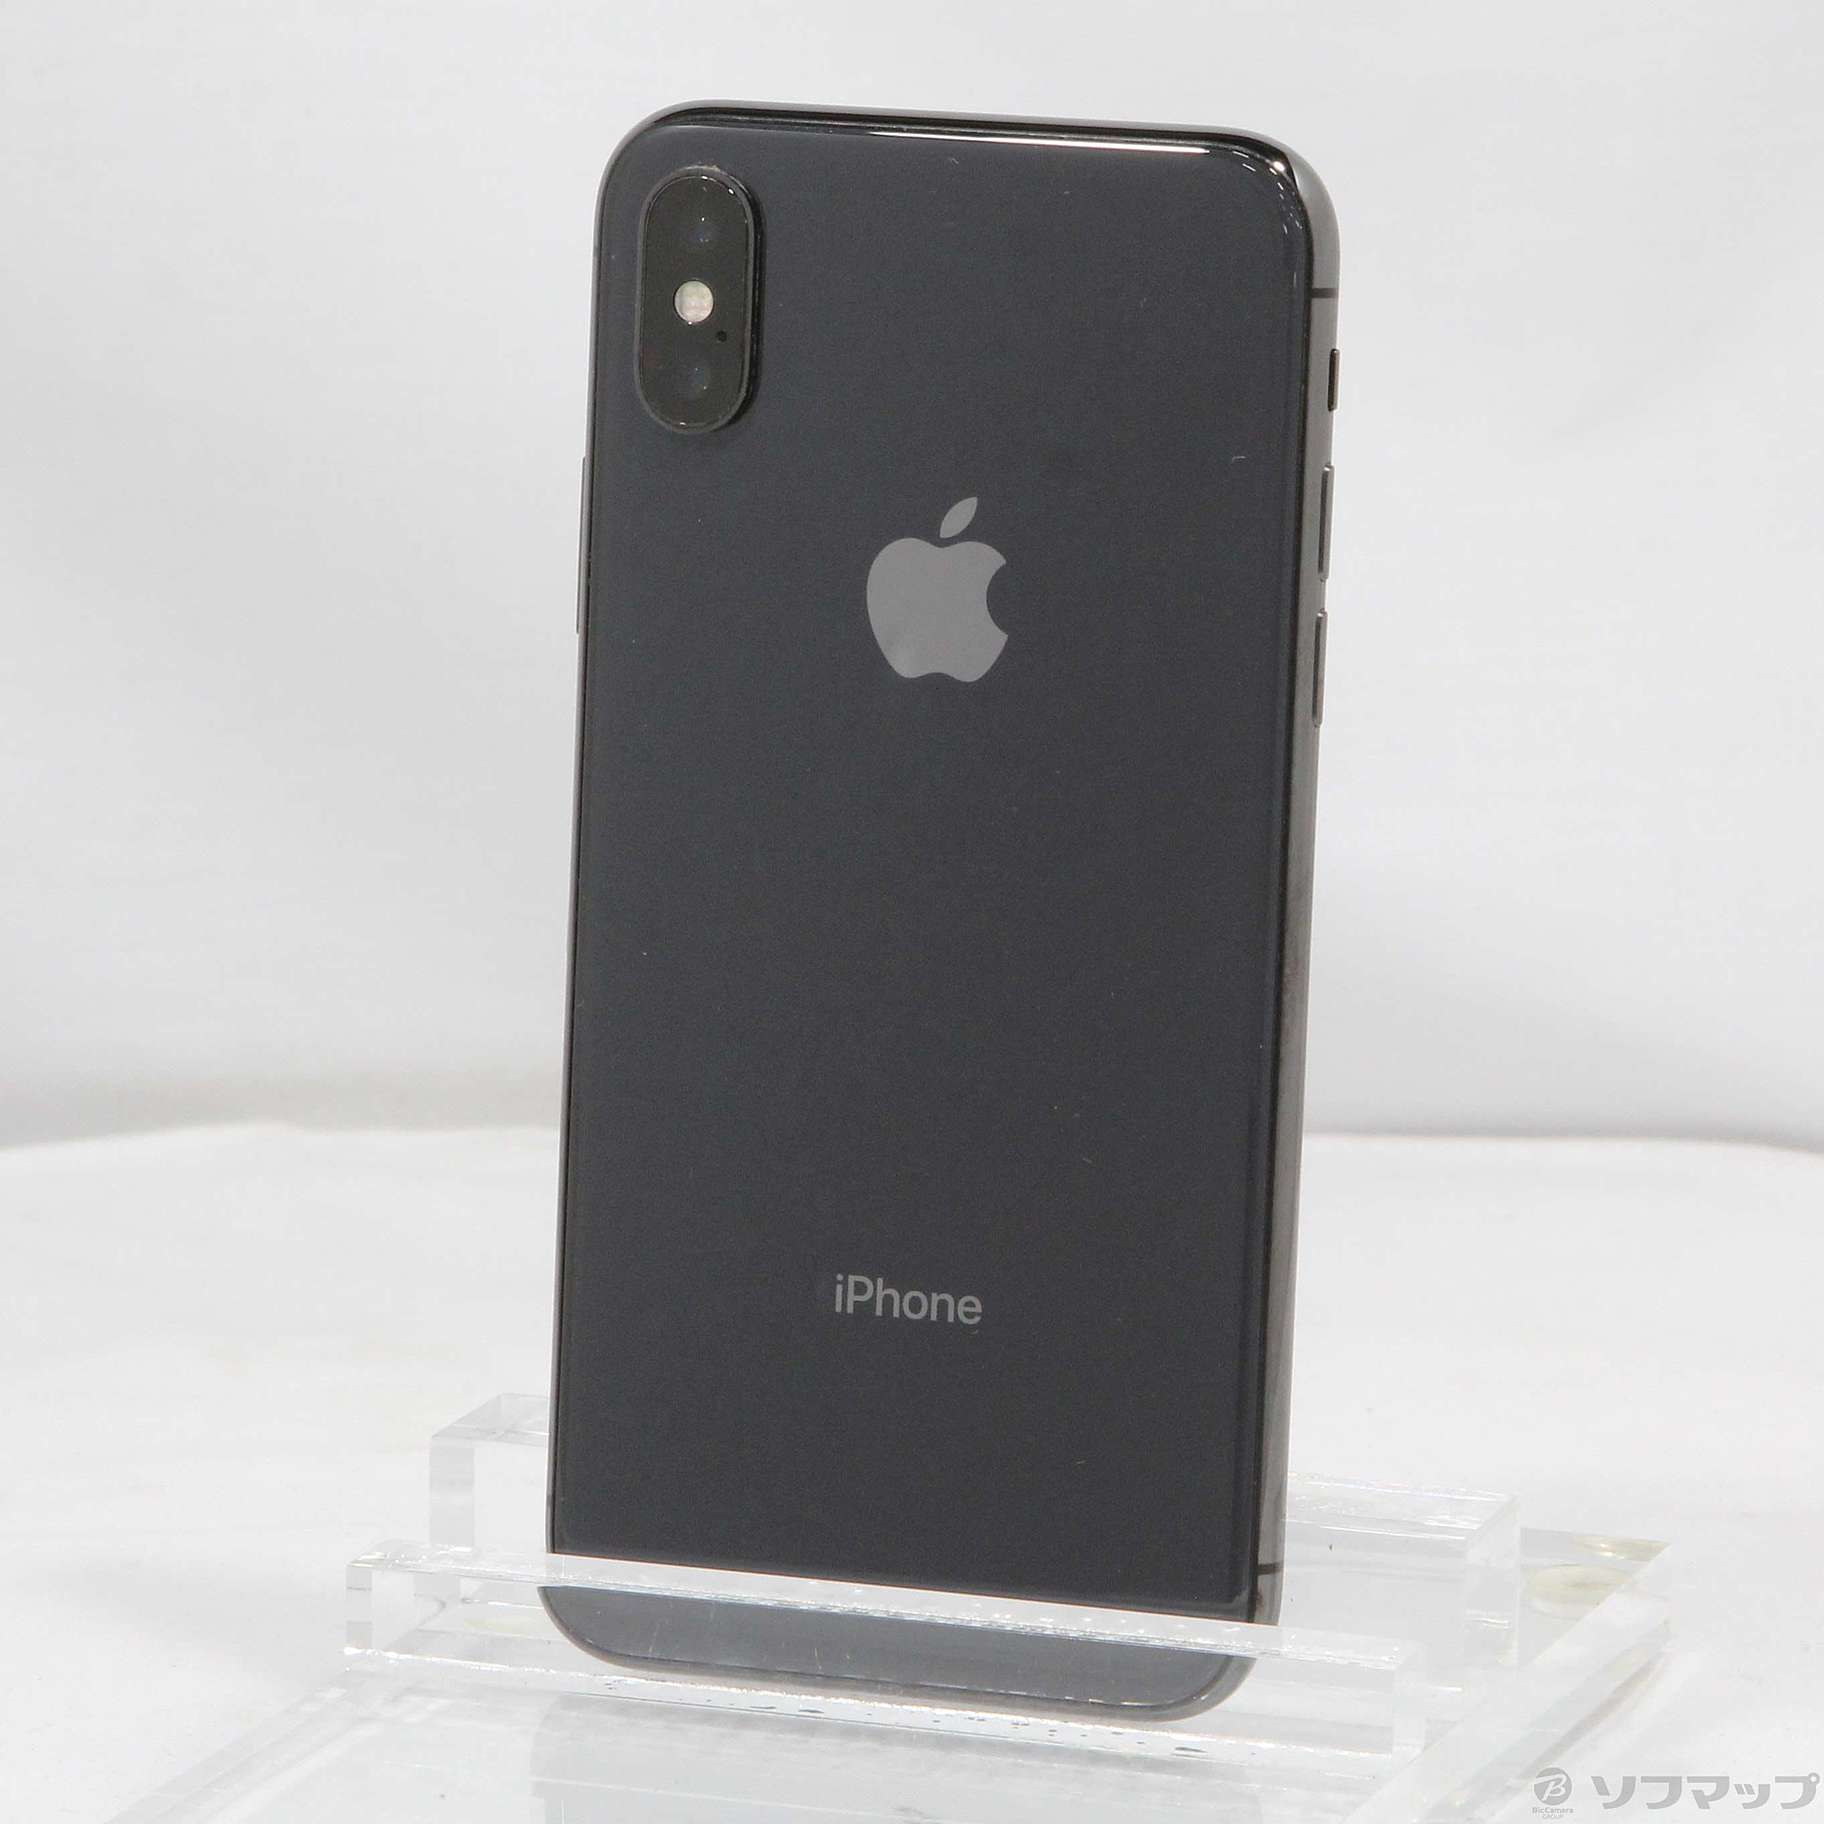 特注生産新品SIMフリー iPhone X 256GB スペースグレイ MQC12J/A スマートフォン本体